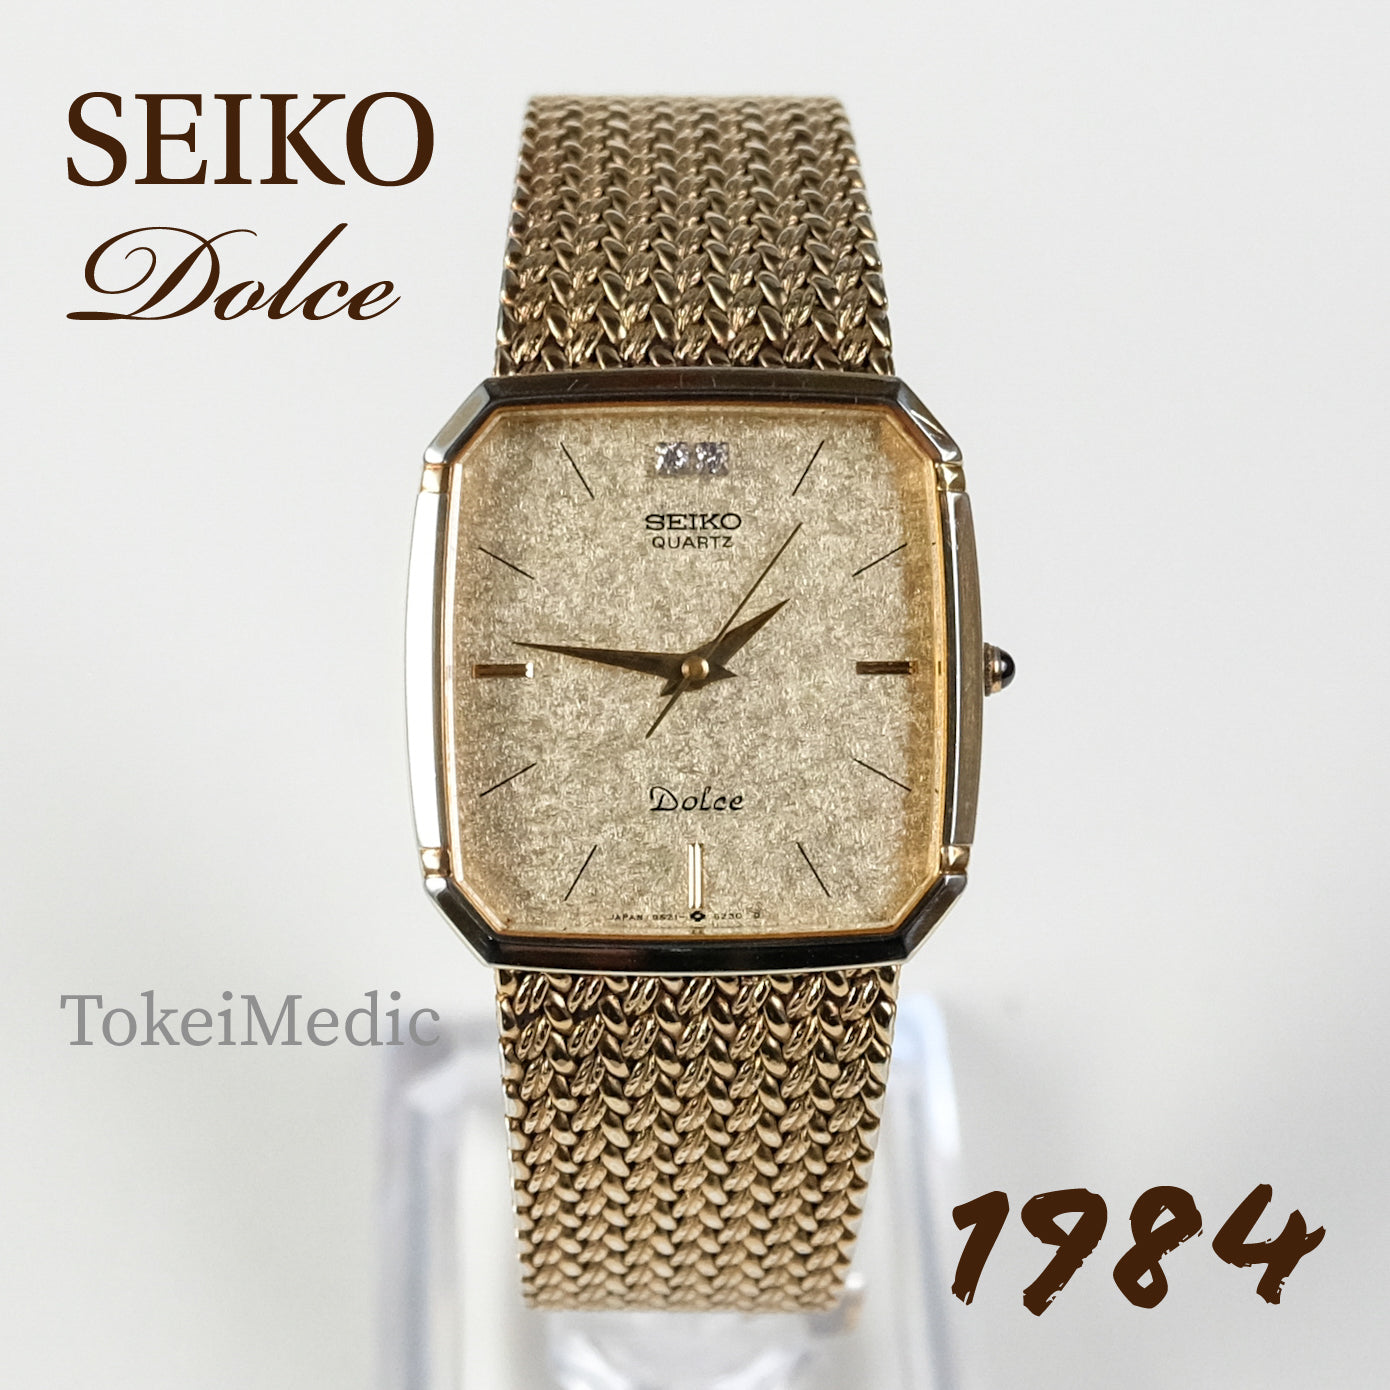 1984 Seiko Dolce 9521-5210 – TokeiMedic